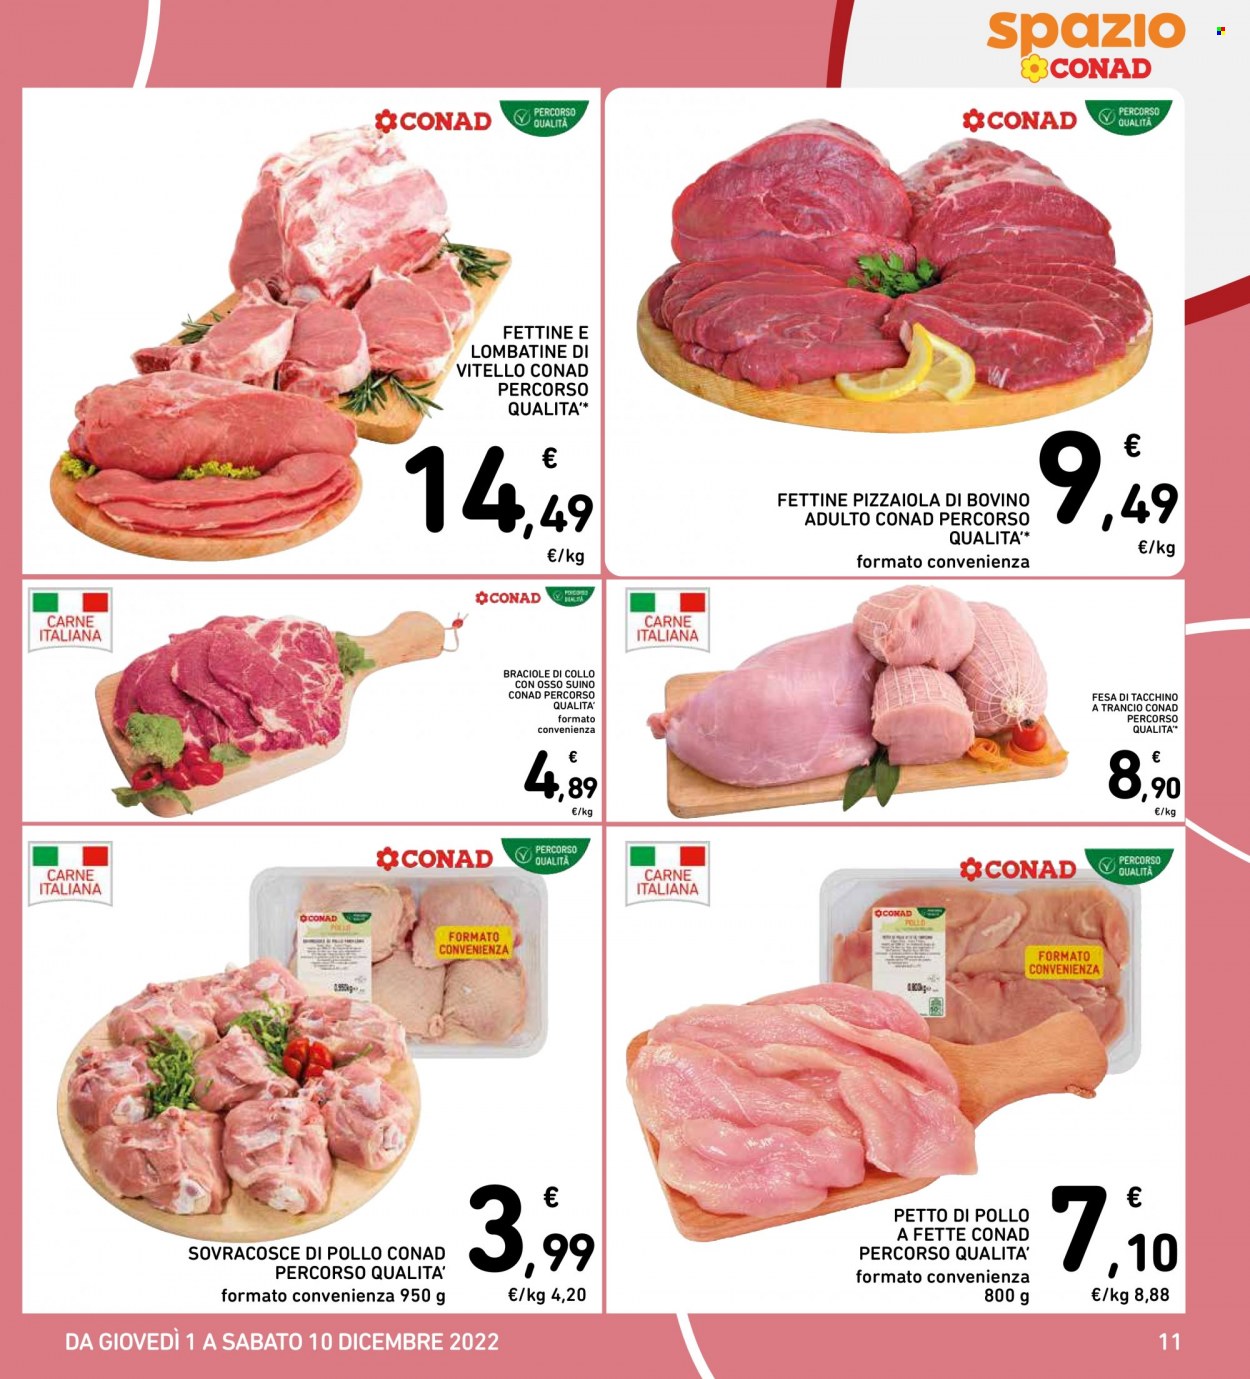 thumbnail - Volantino Conad - 1/12/2022 - 10/12/2022 - Prodotti in offerta - petto di pollo, petto di tacchino, manzo, vitello, fettine di bovino per pizzaiola, lombata di vitello, suino. Pagina 11.